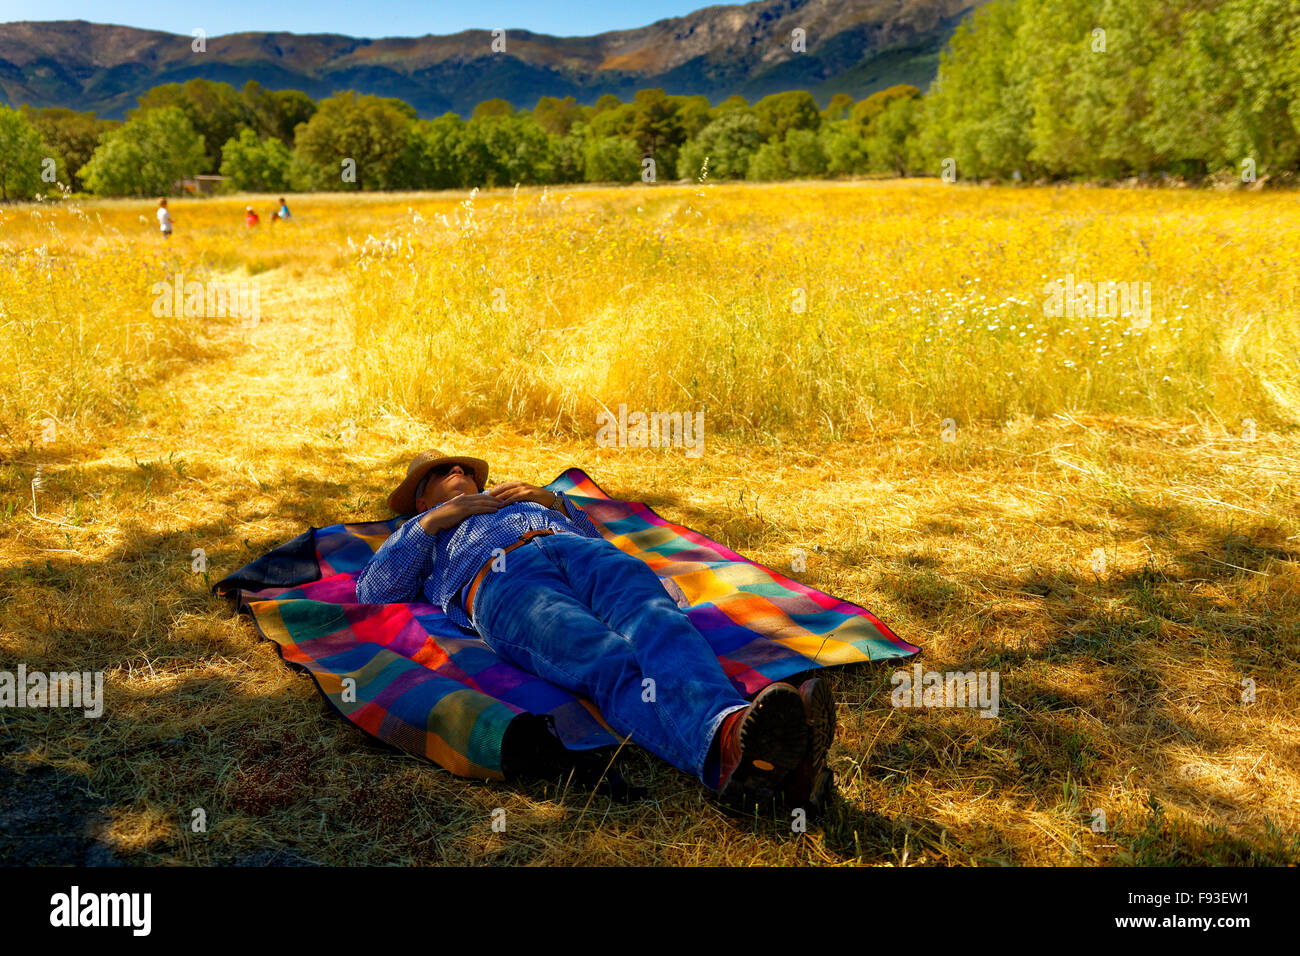 Un campesino tomando siesta en un campo amarillo, mientras que otros están trabajando Foto de stock